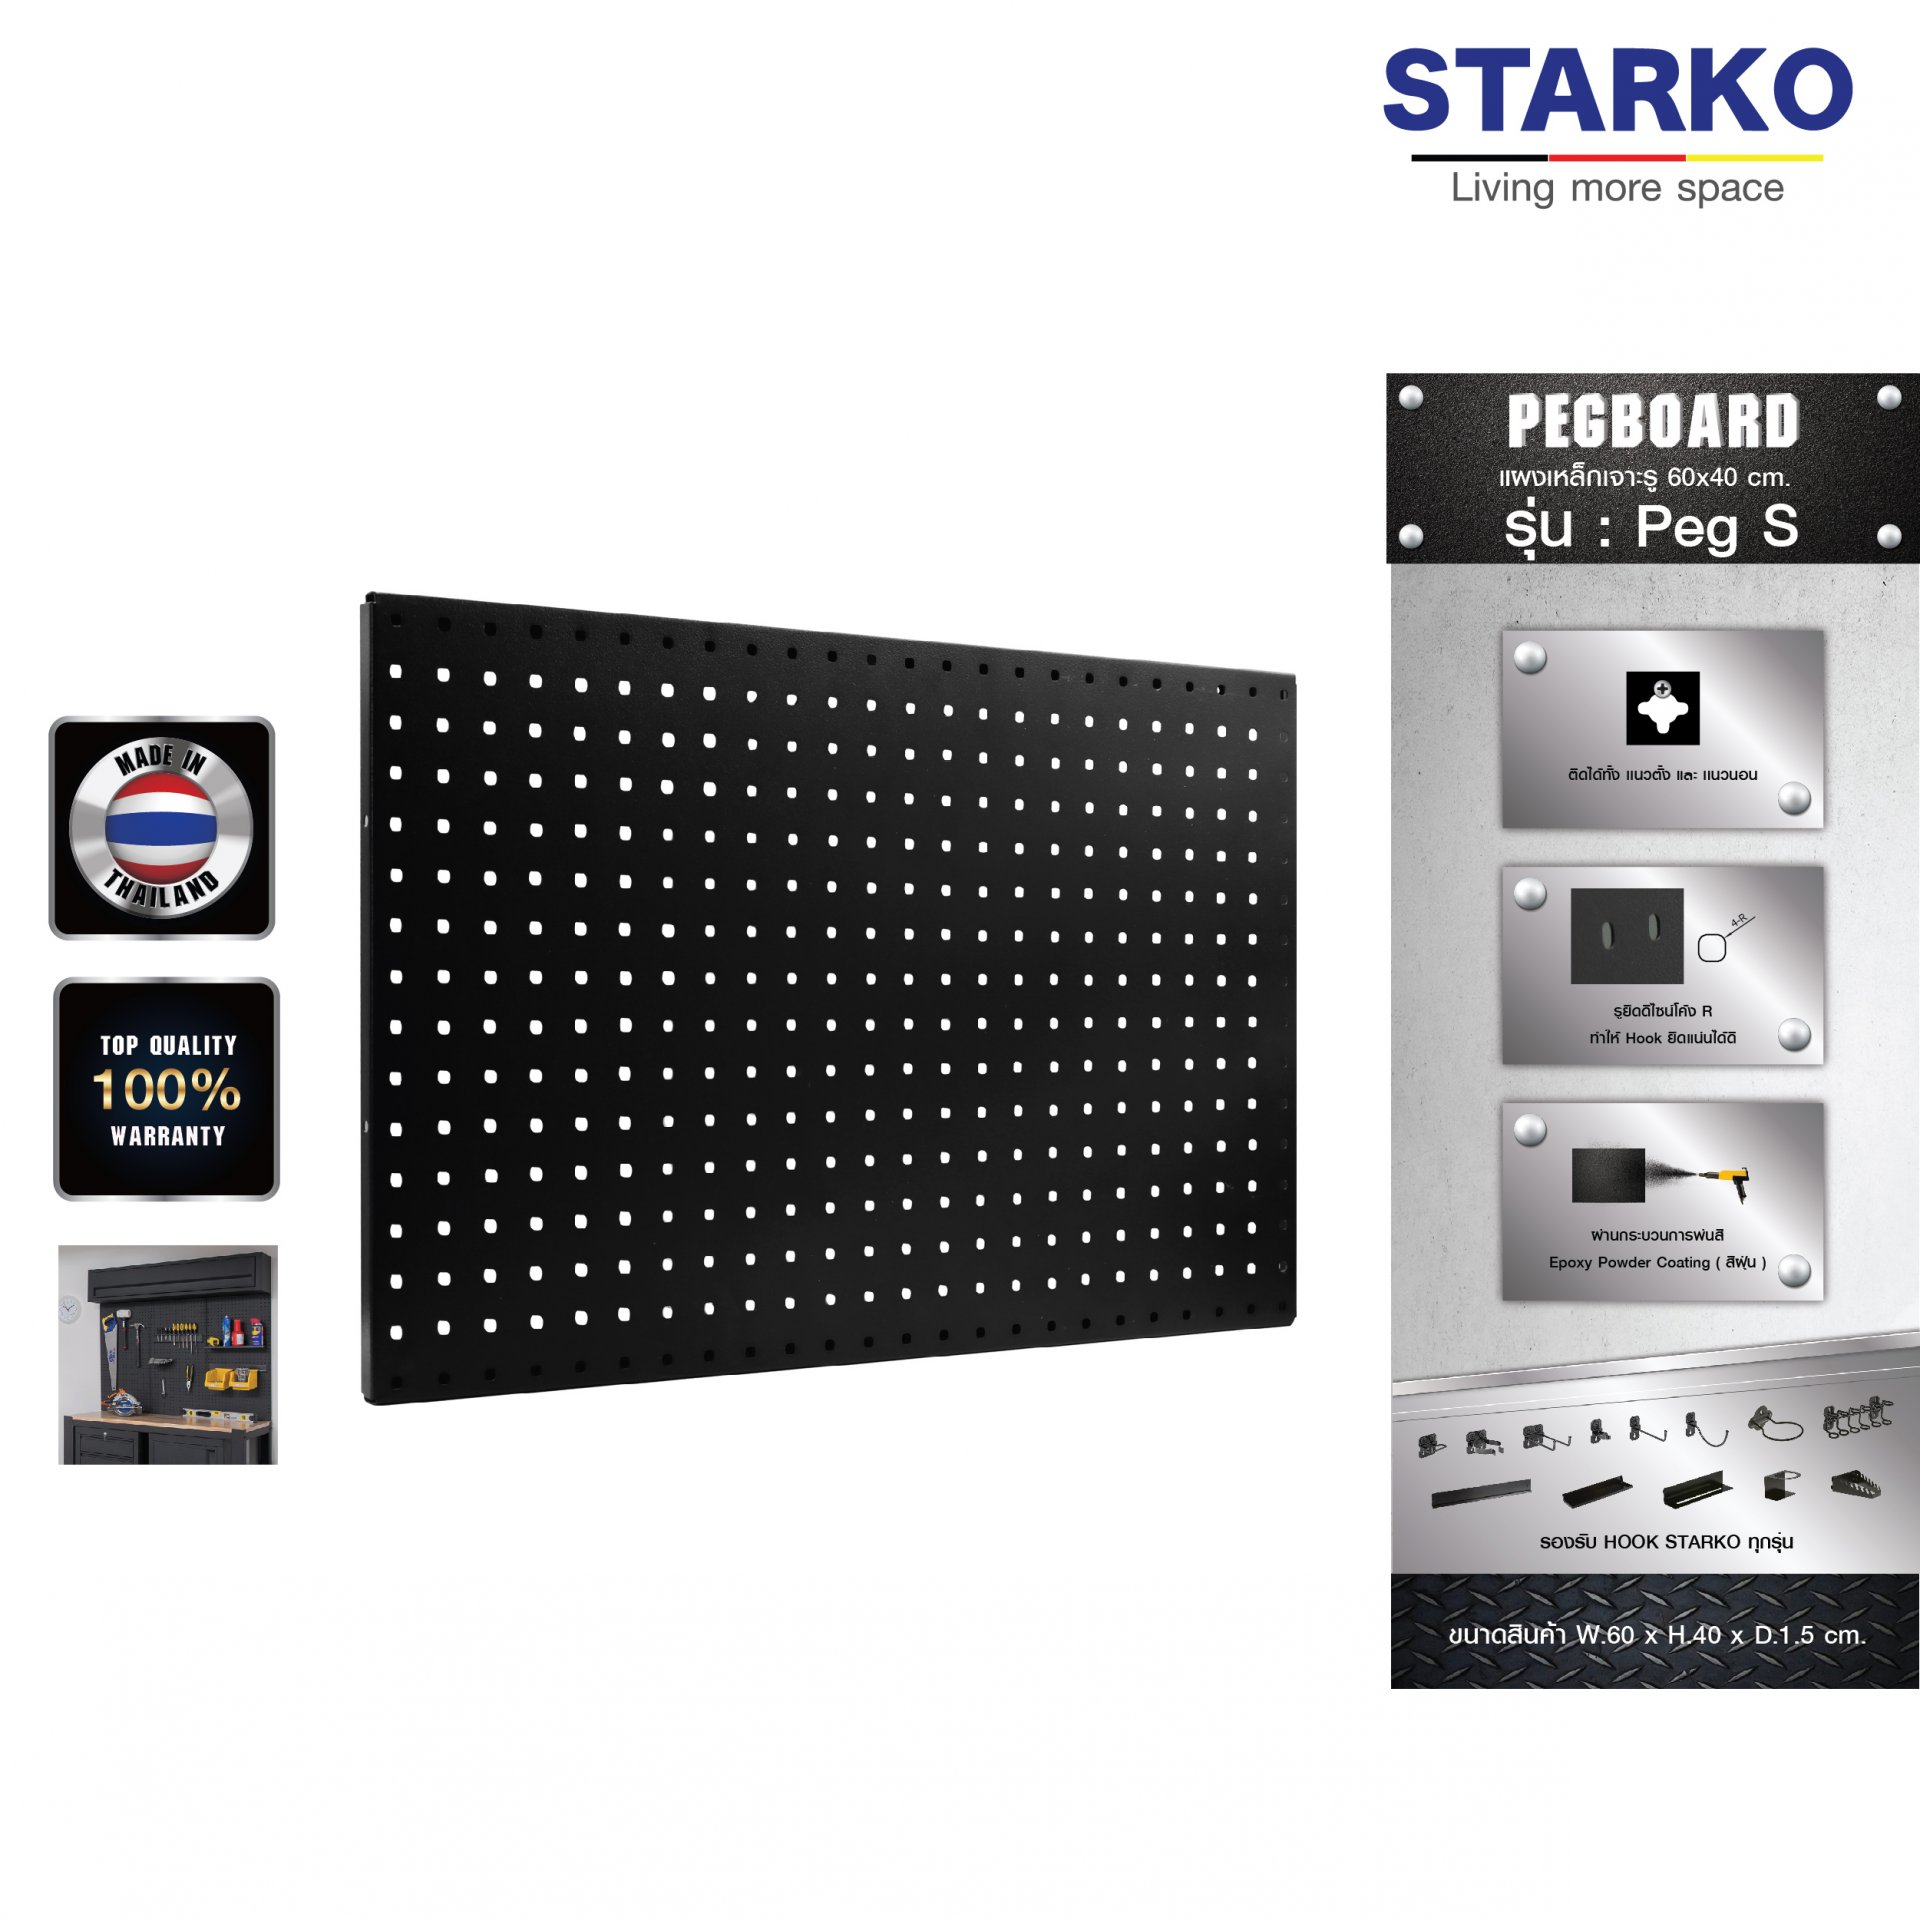 STARKO PEGBOARD รุ่น Peg S (สีดำ) แผงเหล็ก แผงแขวน เครื่องมือช่าง จัดเรียงอุปกรณ์ช่าง จัดระเบียบอุปกรณ์ แข็งแรง สินค้าประเทศไทย